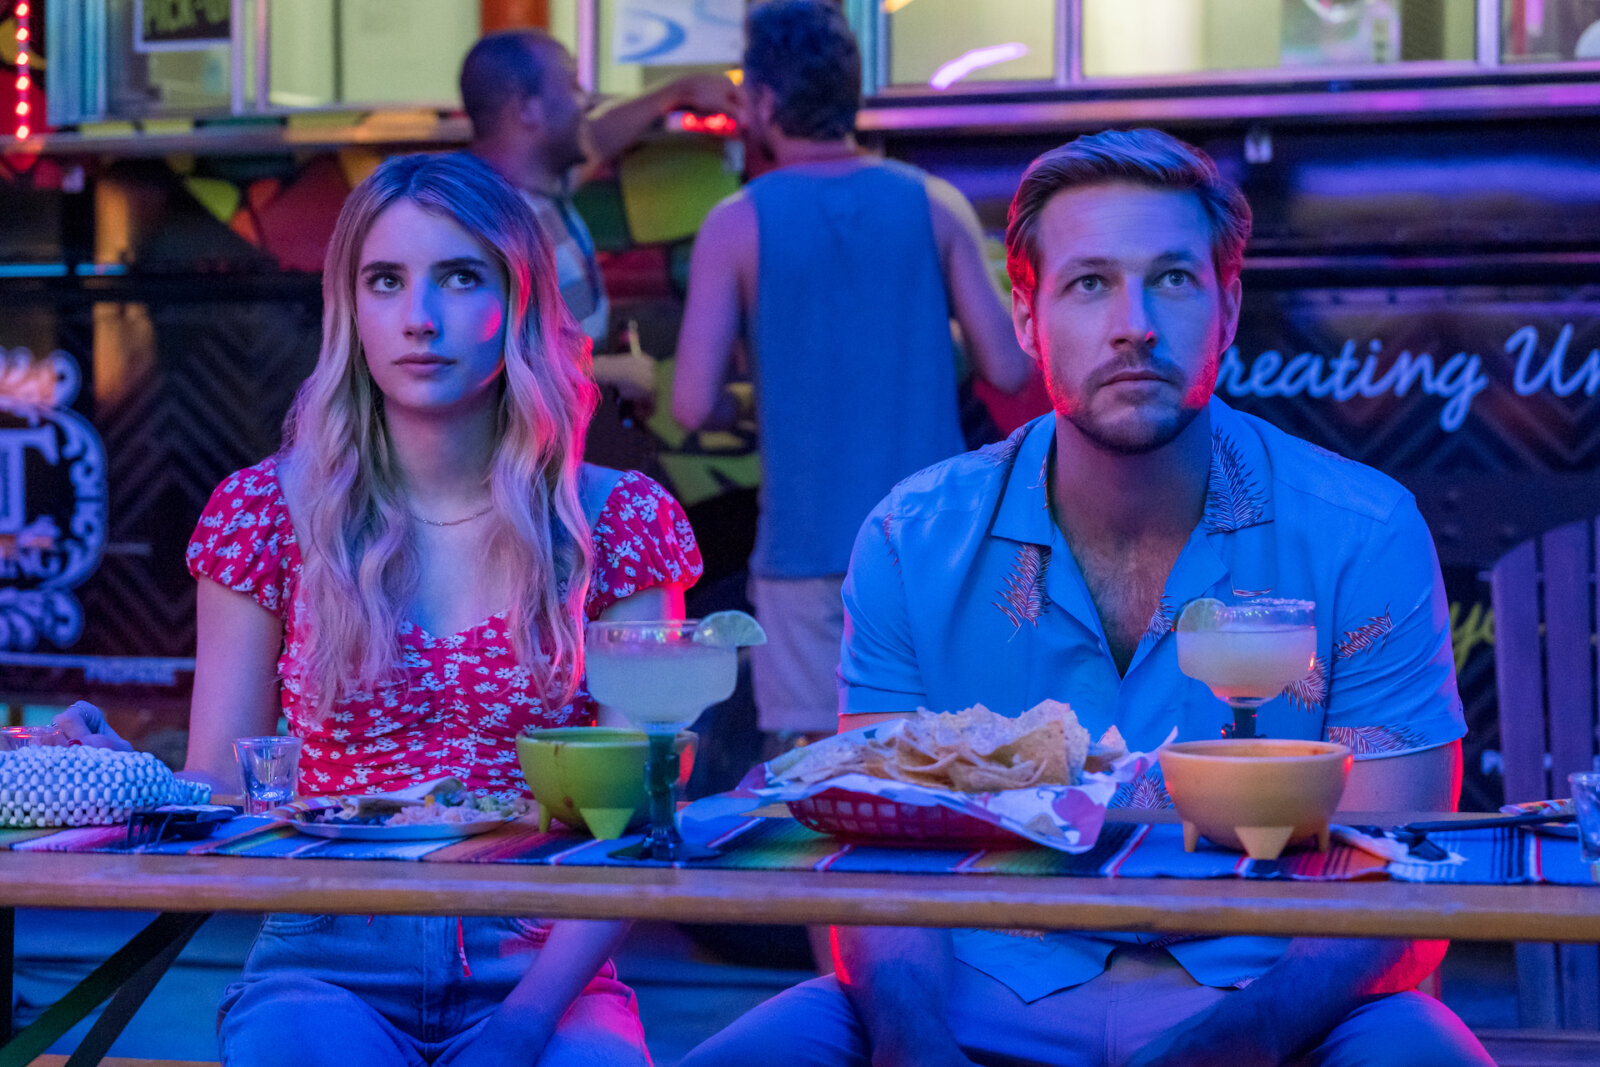 In der Netflix-RomCom Holidate haben Sloane (Emma Watson) und Jackson (Luke Bracey) Sex. Hier gibt es aber zunächst Essen und Drinks.